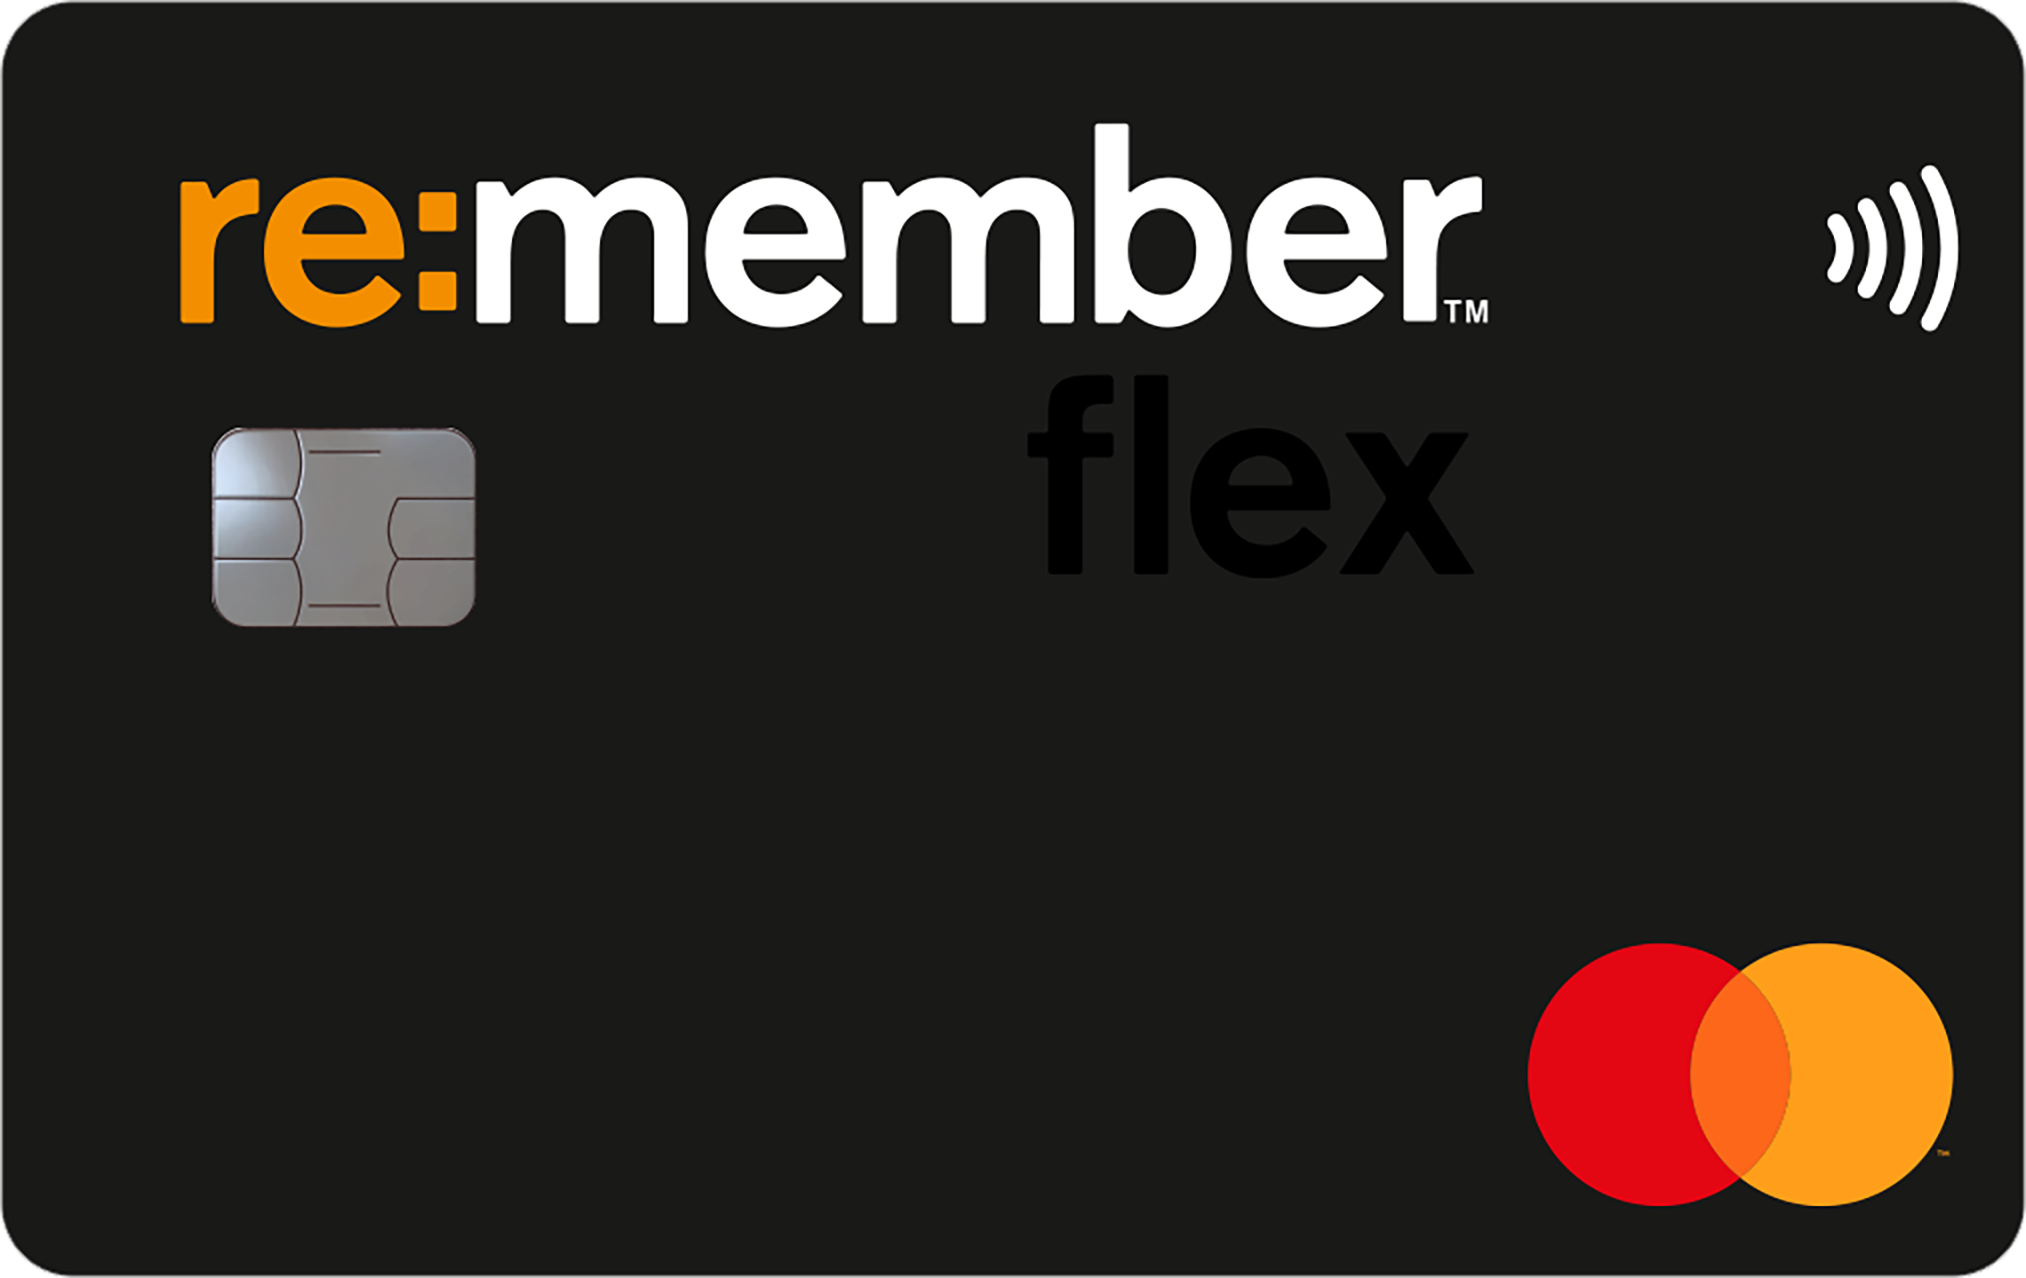 Re:member Flex är bästa kreditkort